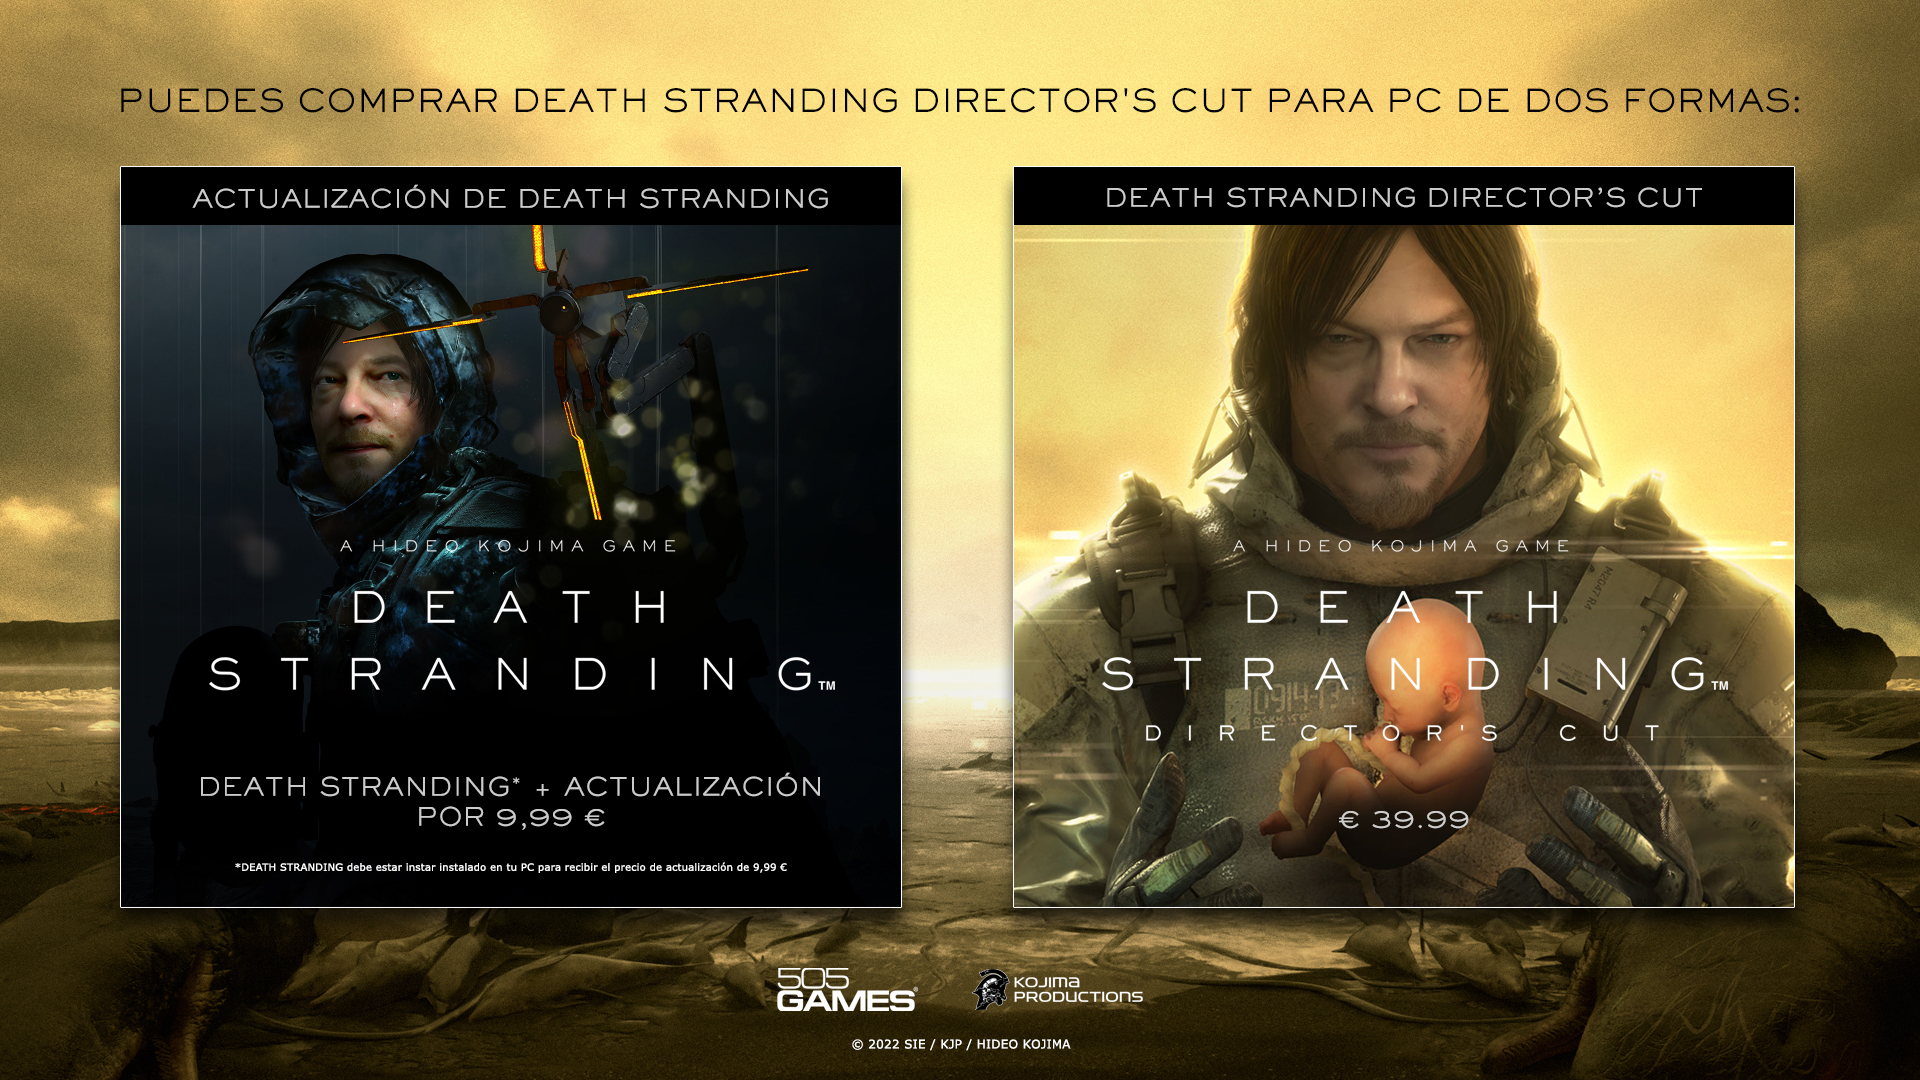  Death Stranding Director's Cut y sus precios